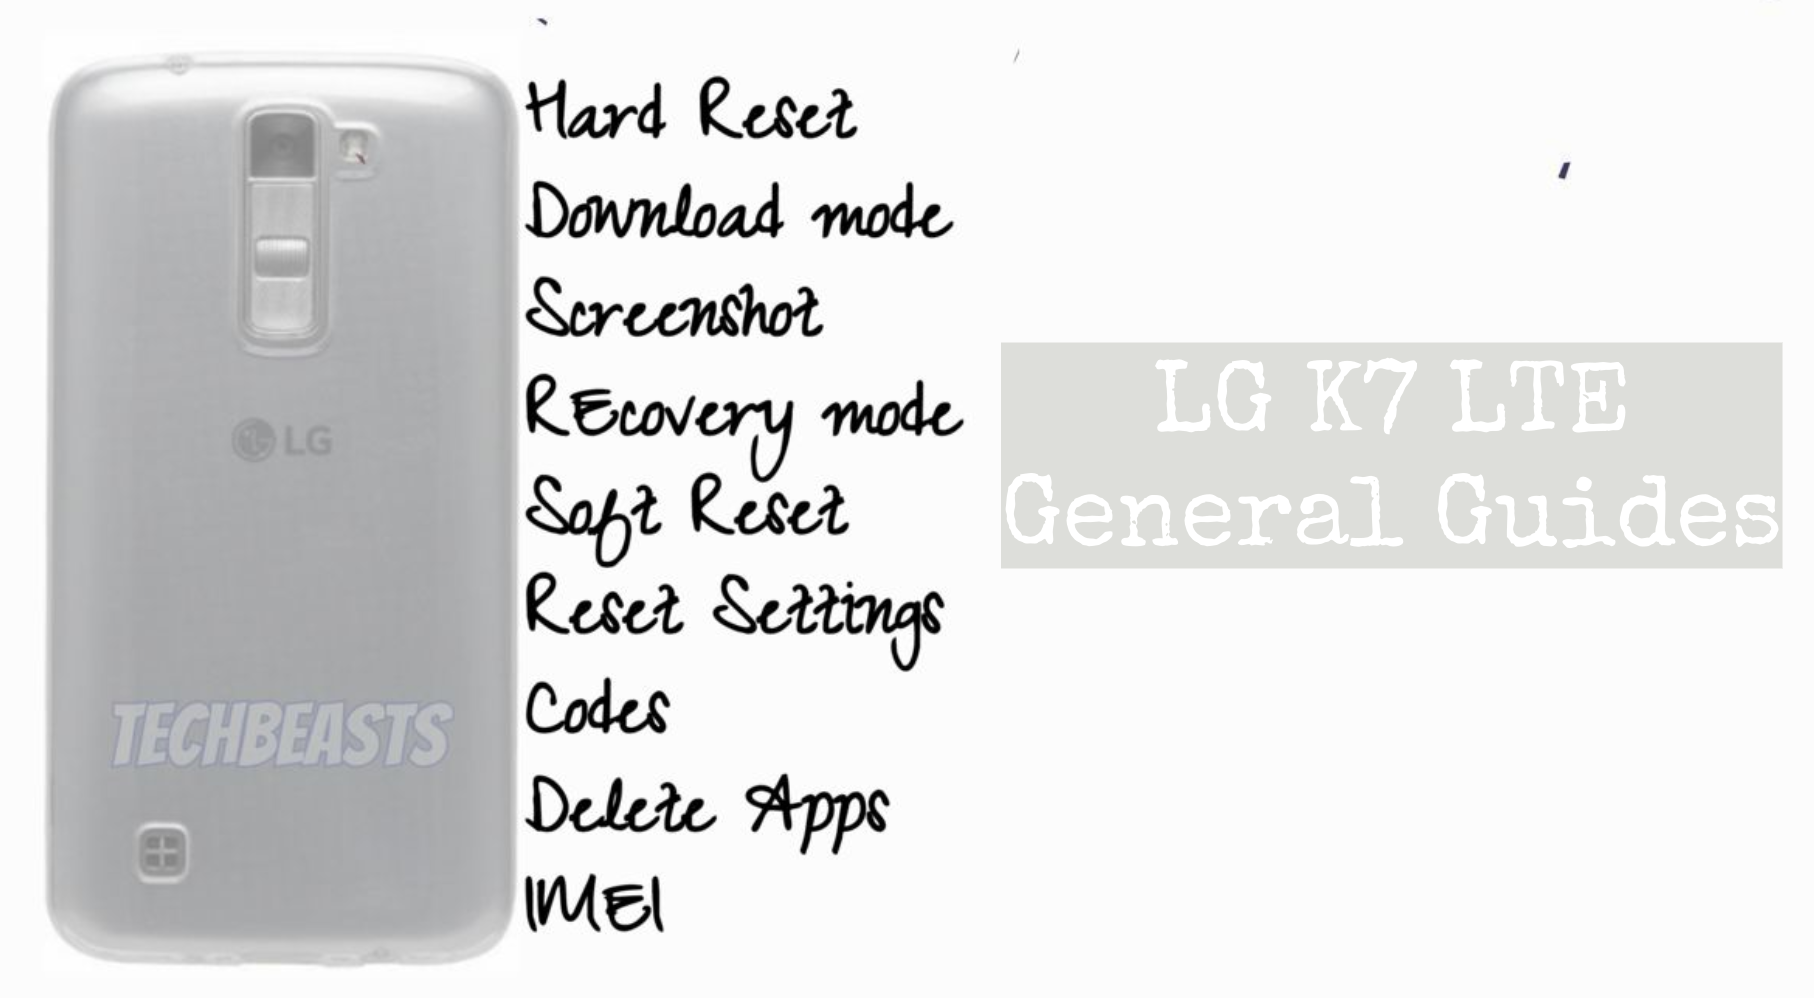 LG K7 LTE Guides